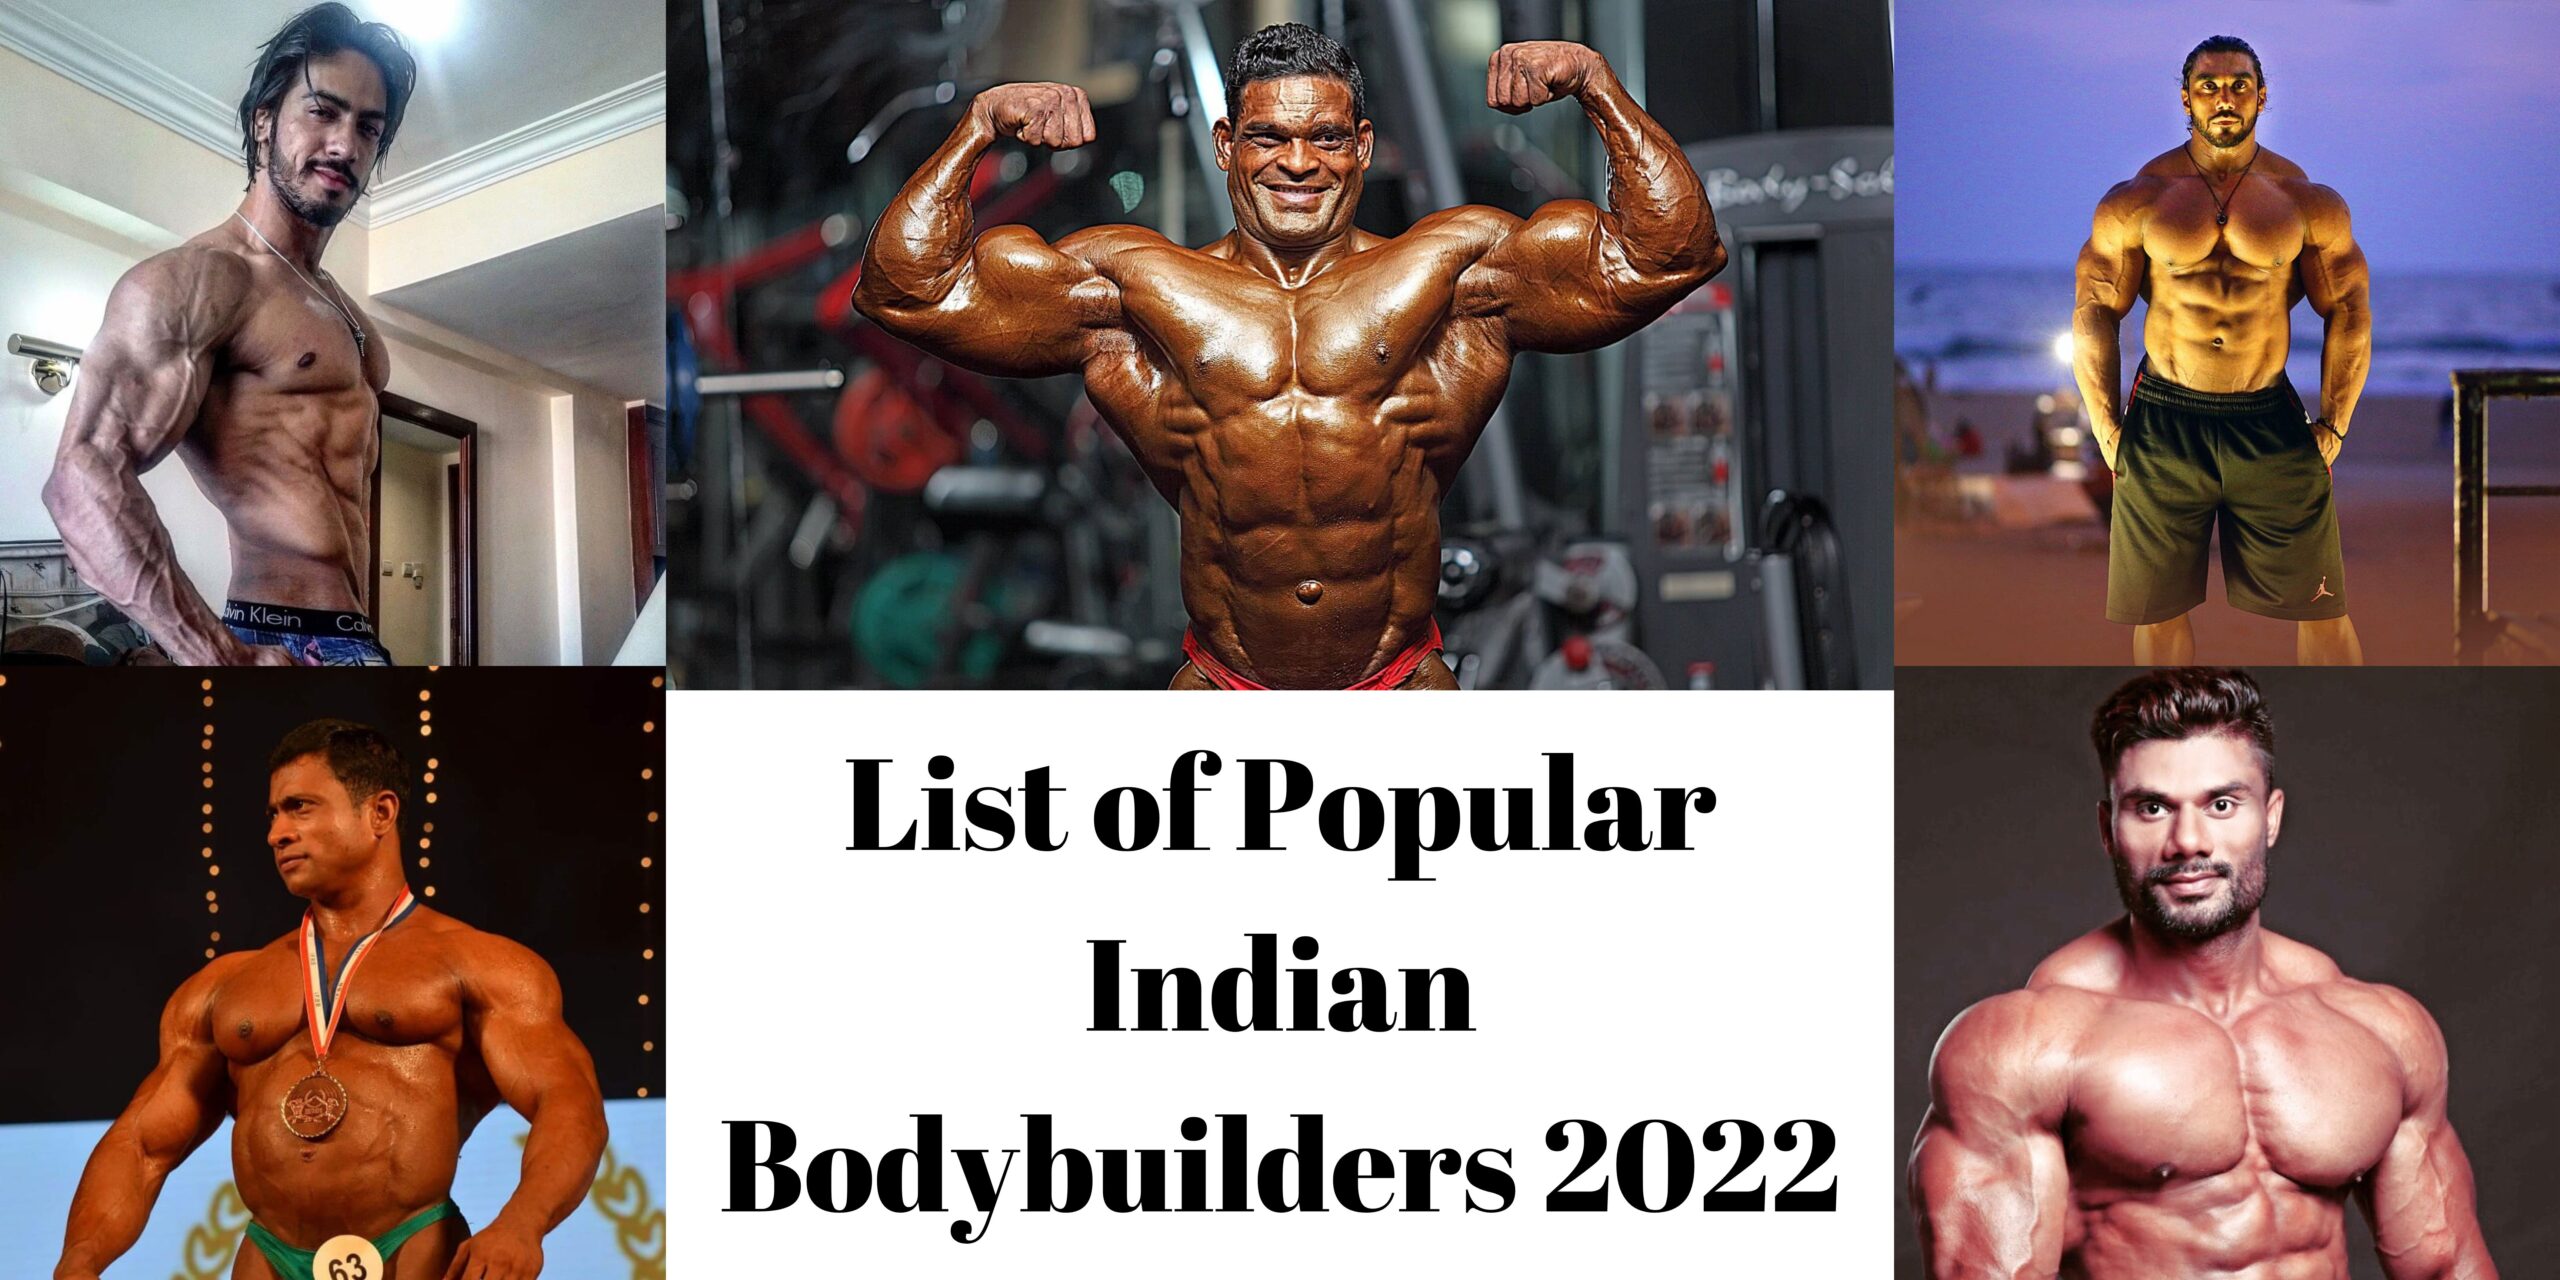 List of Popular Indian Bodybuilders 2022